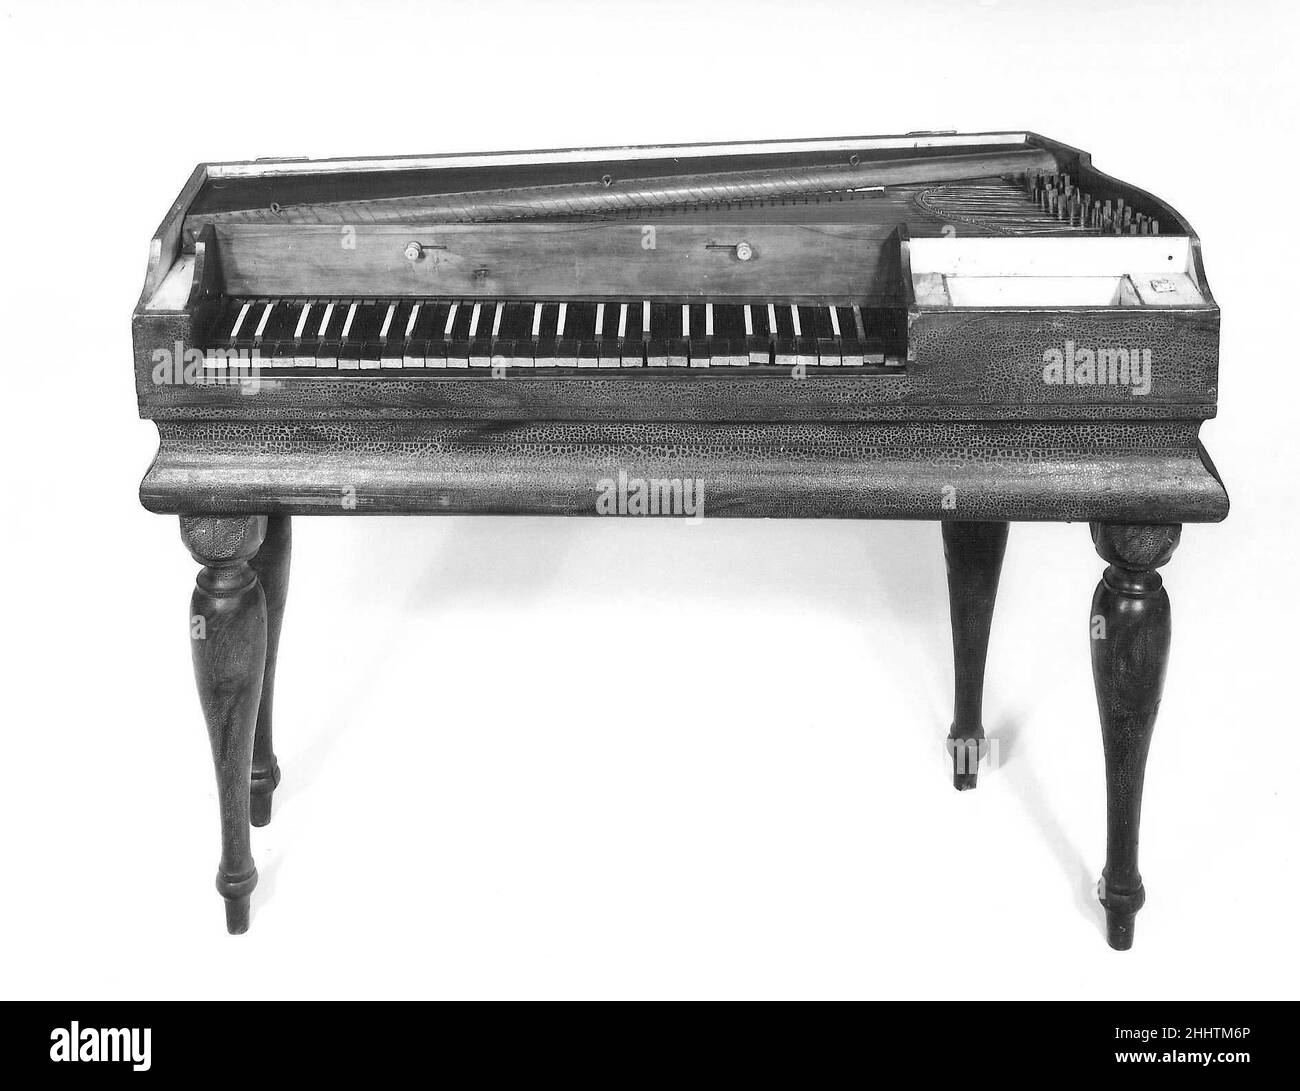 Piano like Imágenes de stock en blanco y negro - Alamy